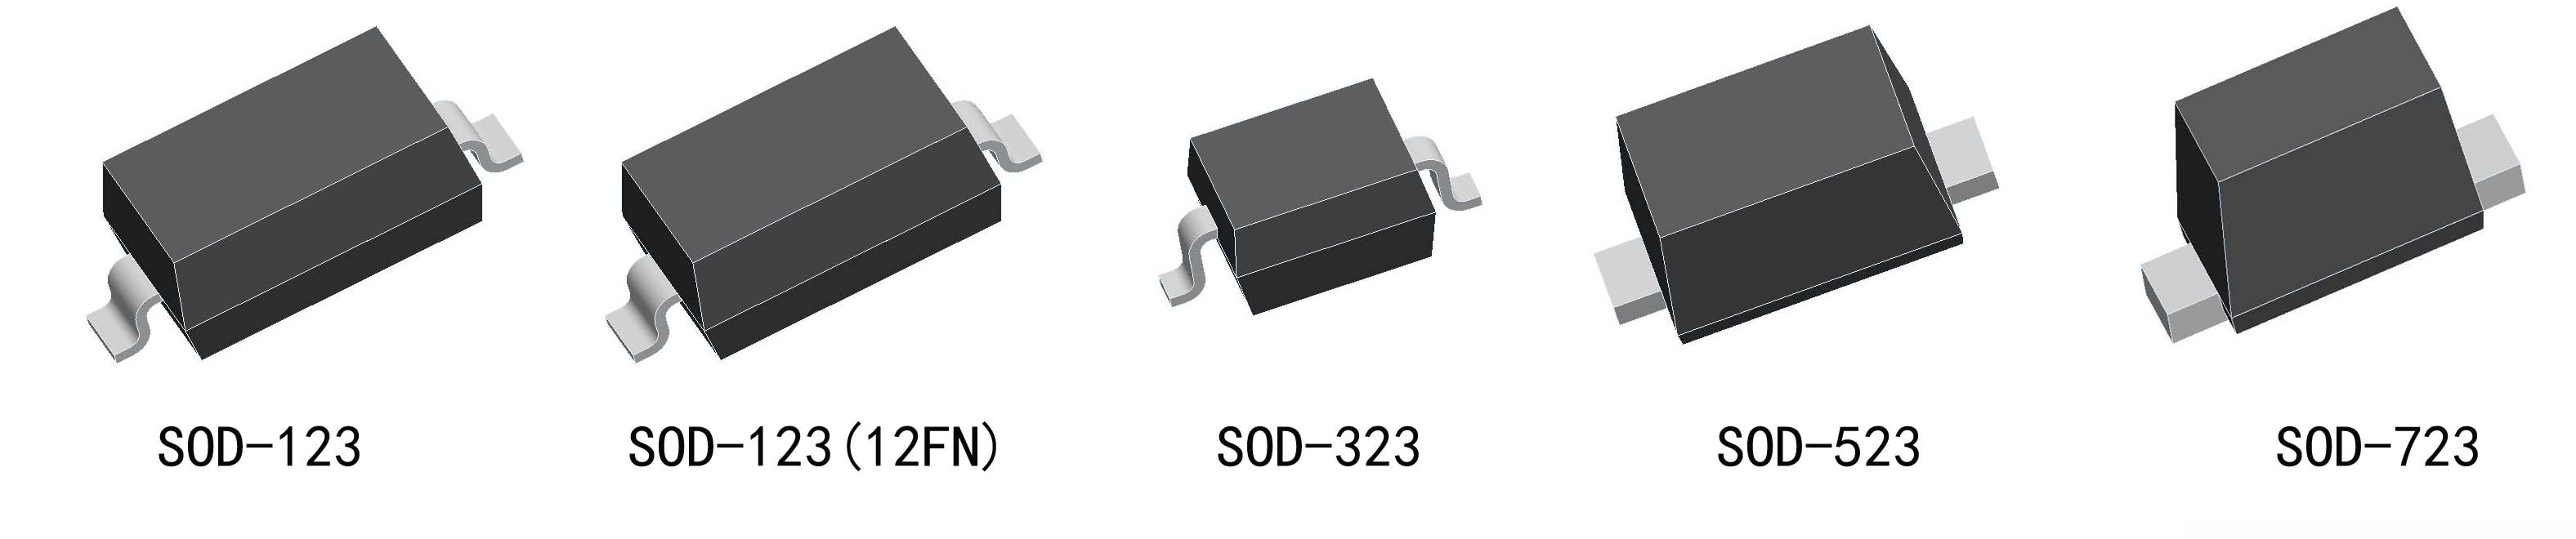 sod贴片二极管封装形式与尺寸